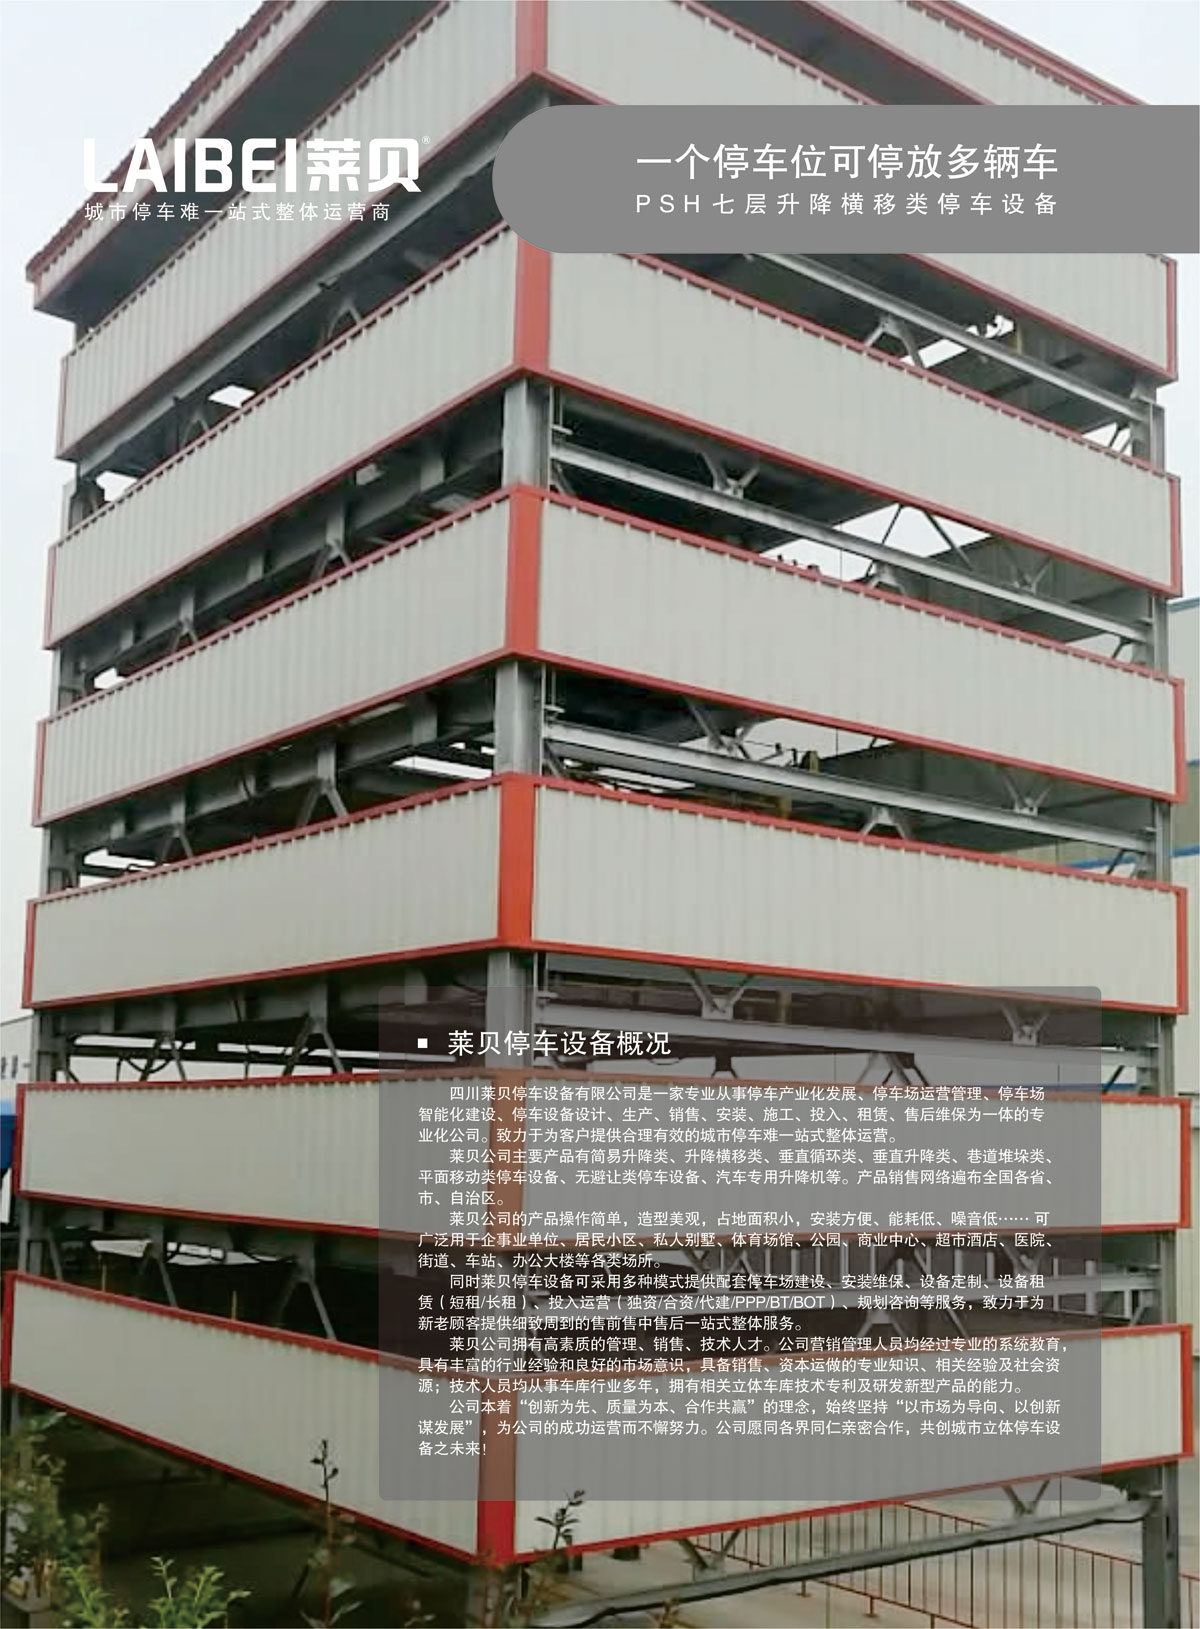 贵阳莱贝PSH7七层升降横移机械式立体停车库概况.jpg